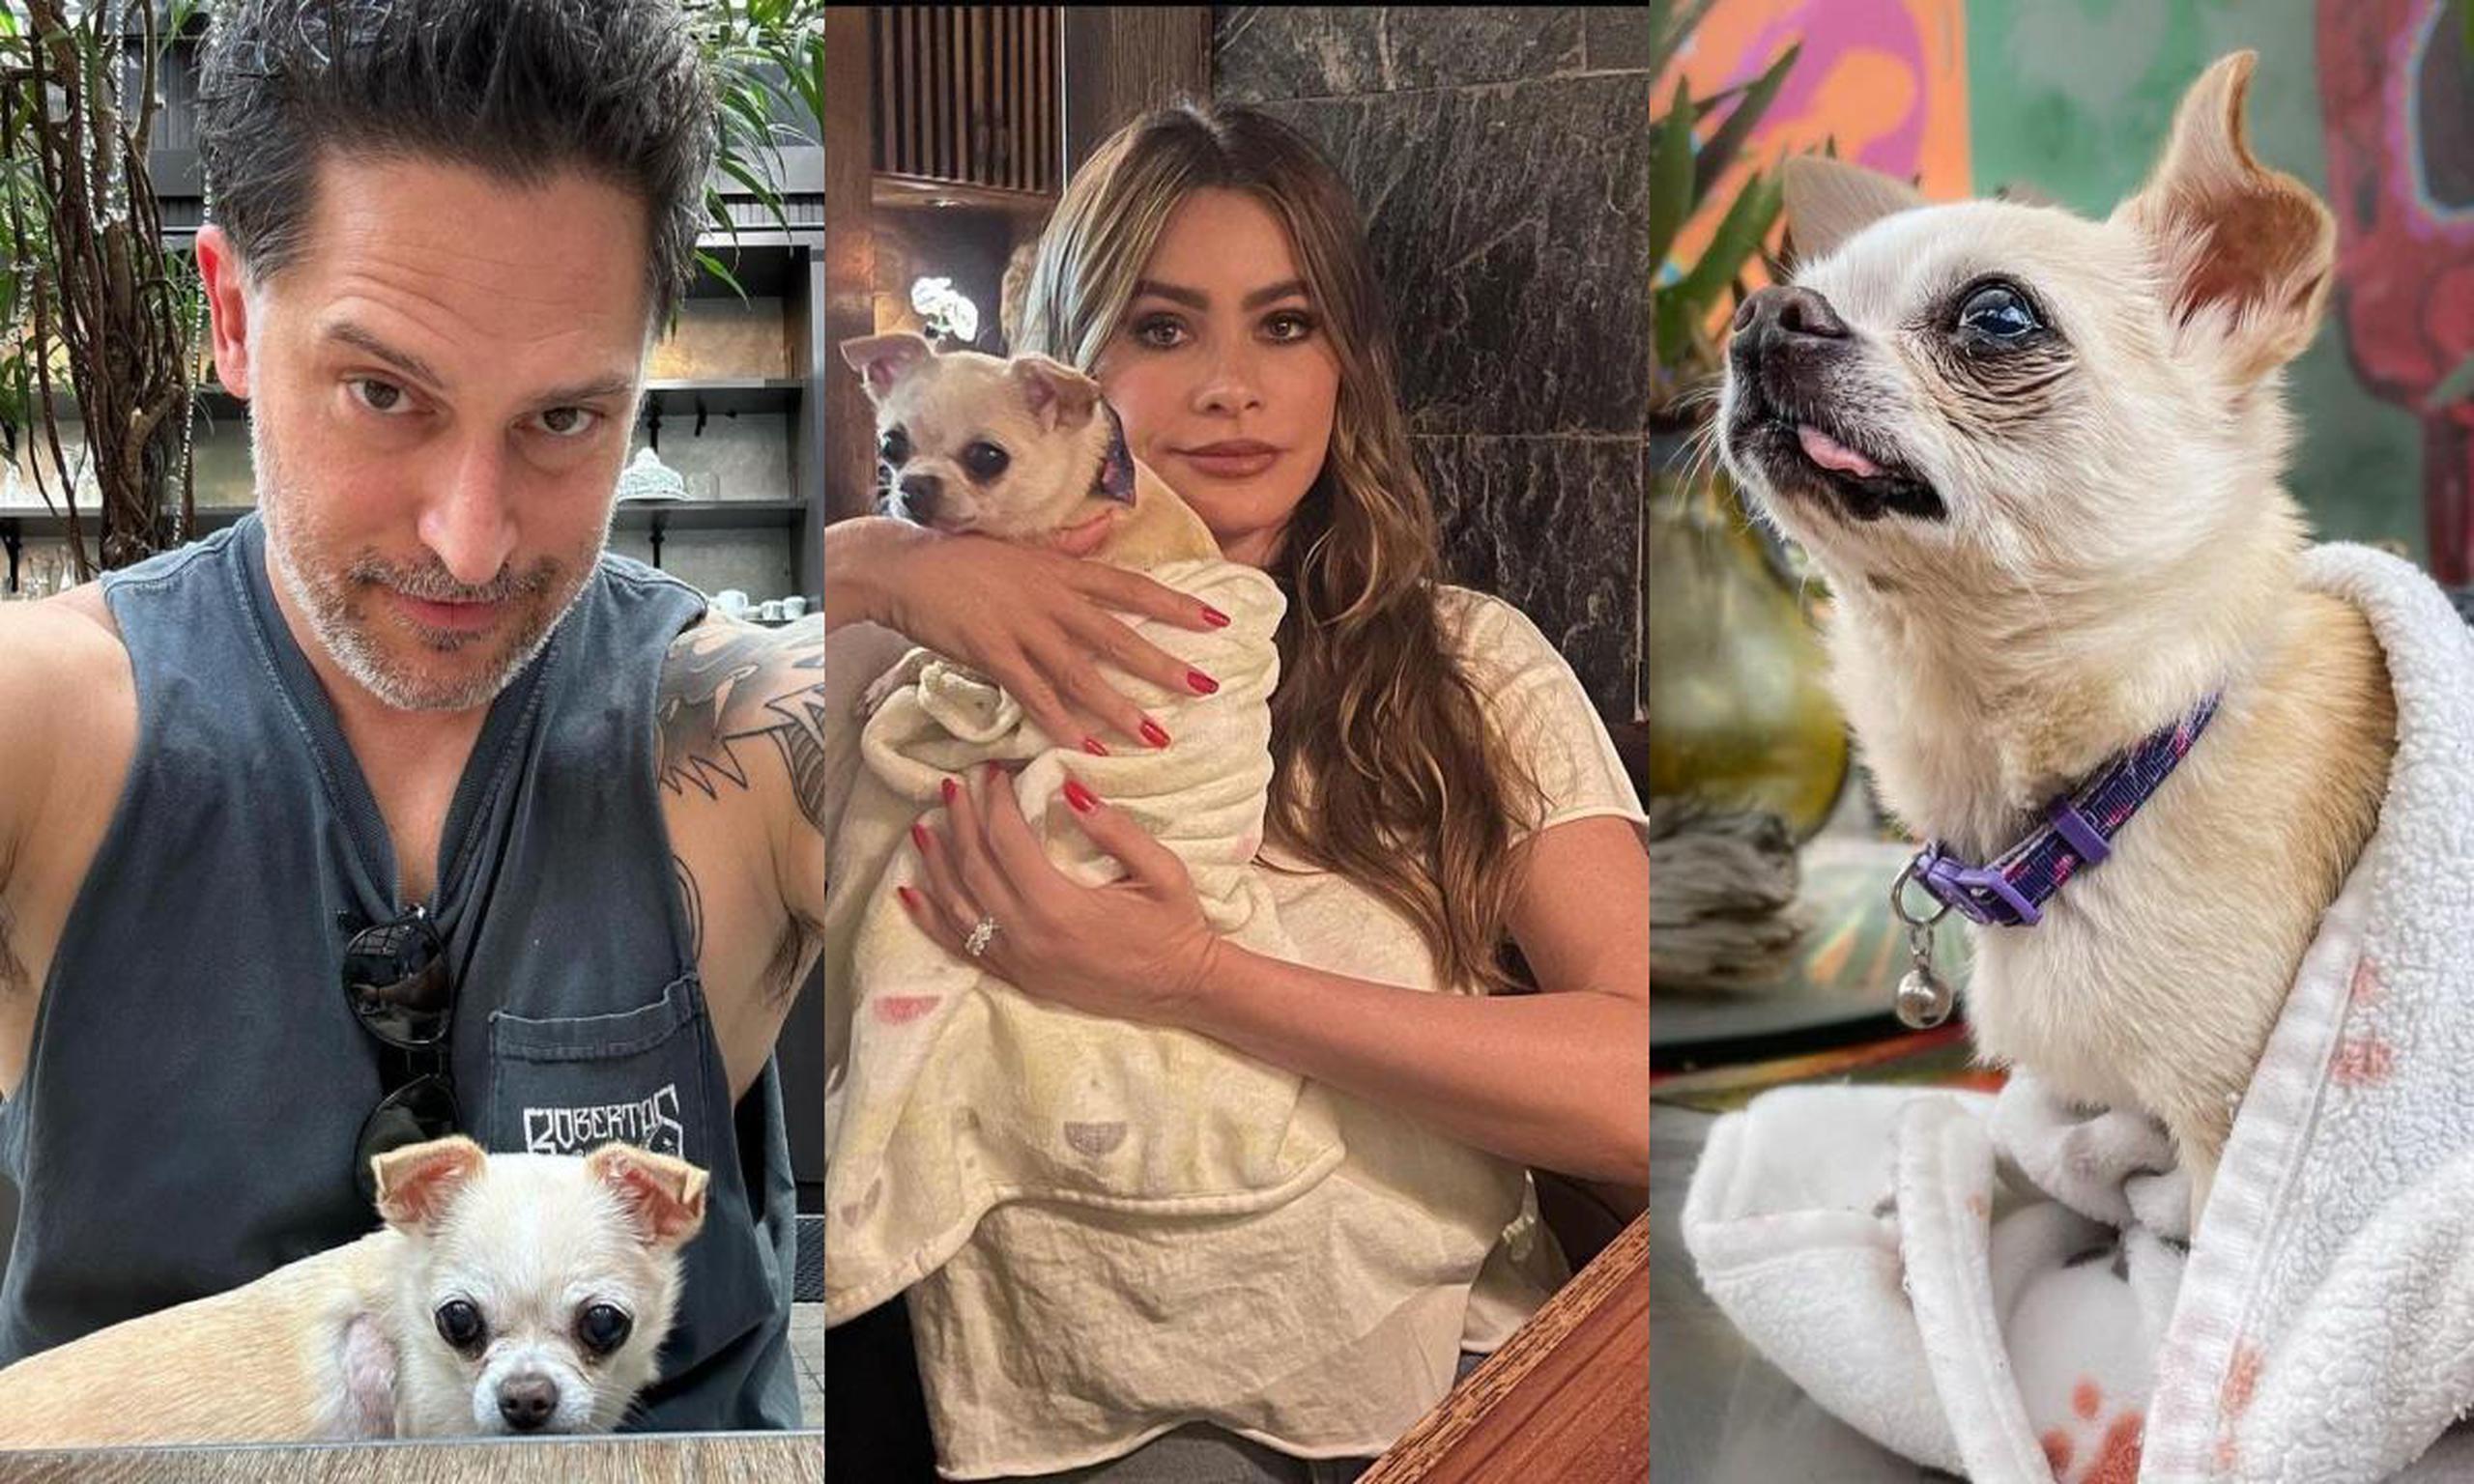 Días antes del anuncio de divorcio, Sofía Vergara y Joe Manganiello compartieron en redes sociales imágenes de la celebración del décimo cumpleaños de su mascota.